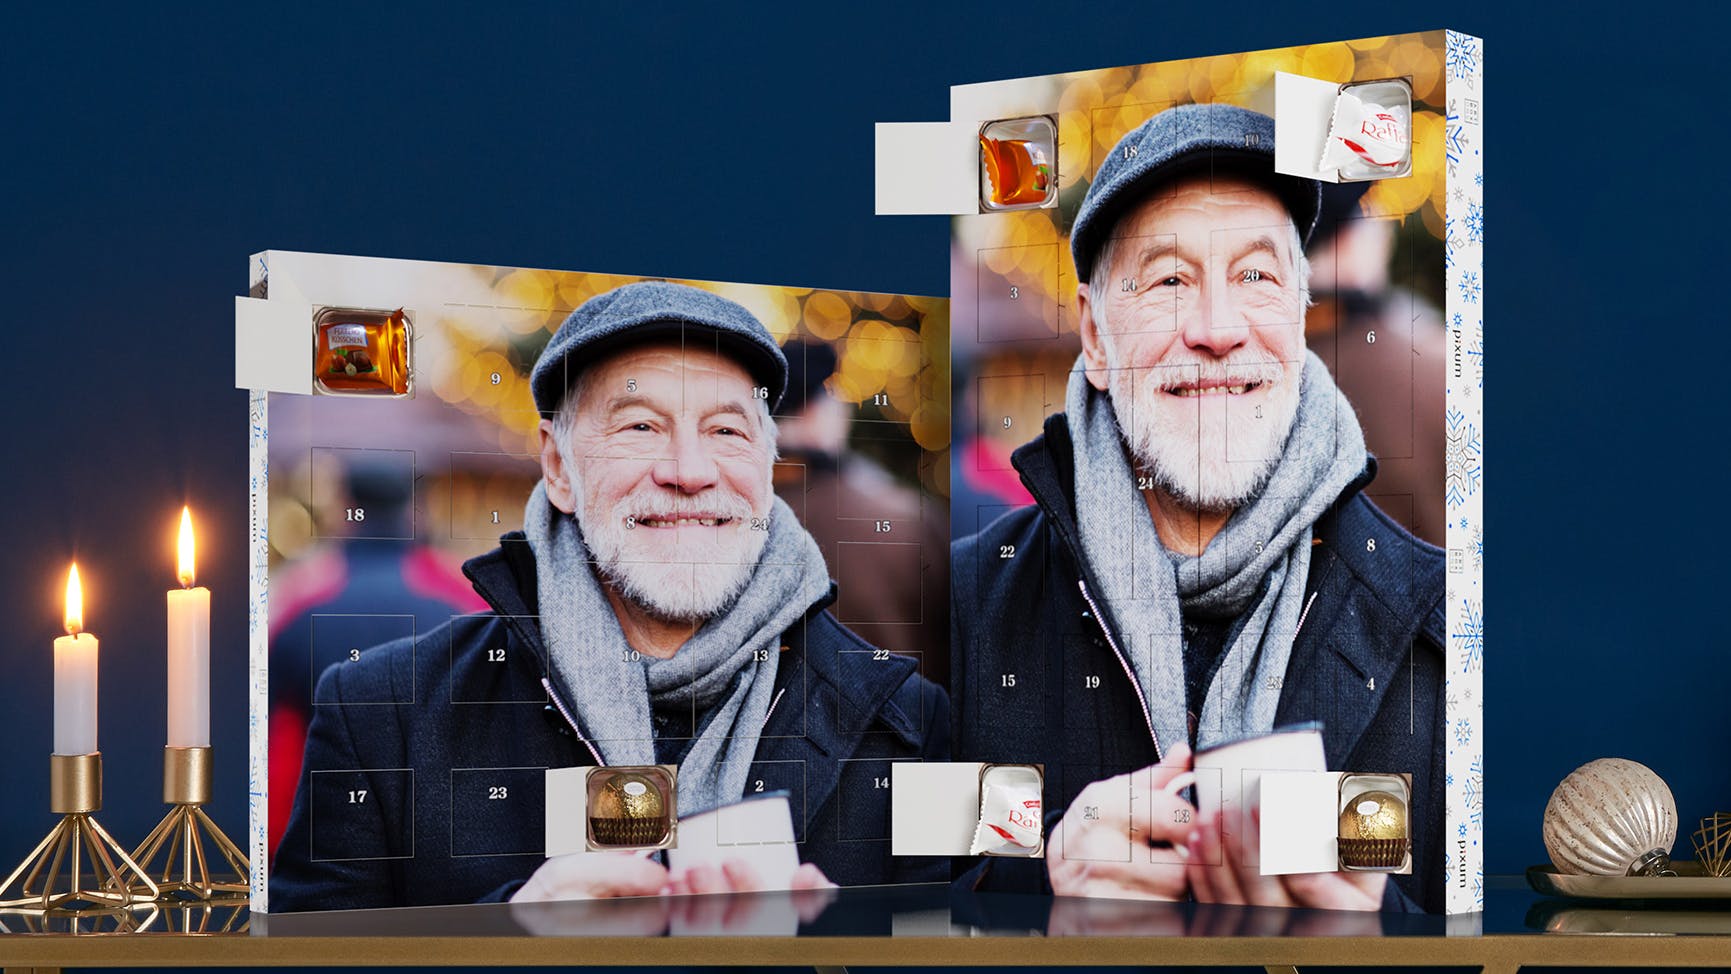 Adventskalender med choklad från Ferrero och ett foto av en äldre man som skrattar